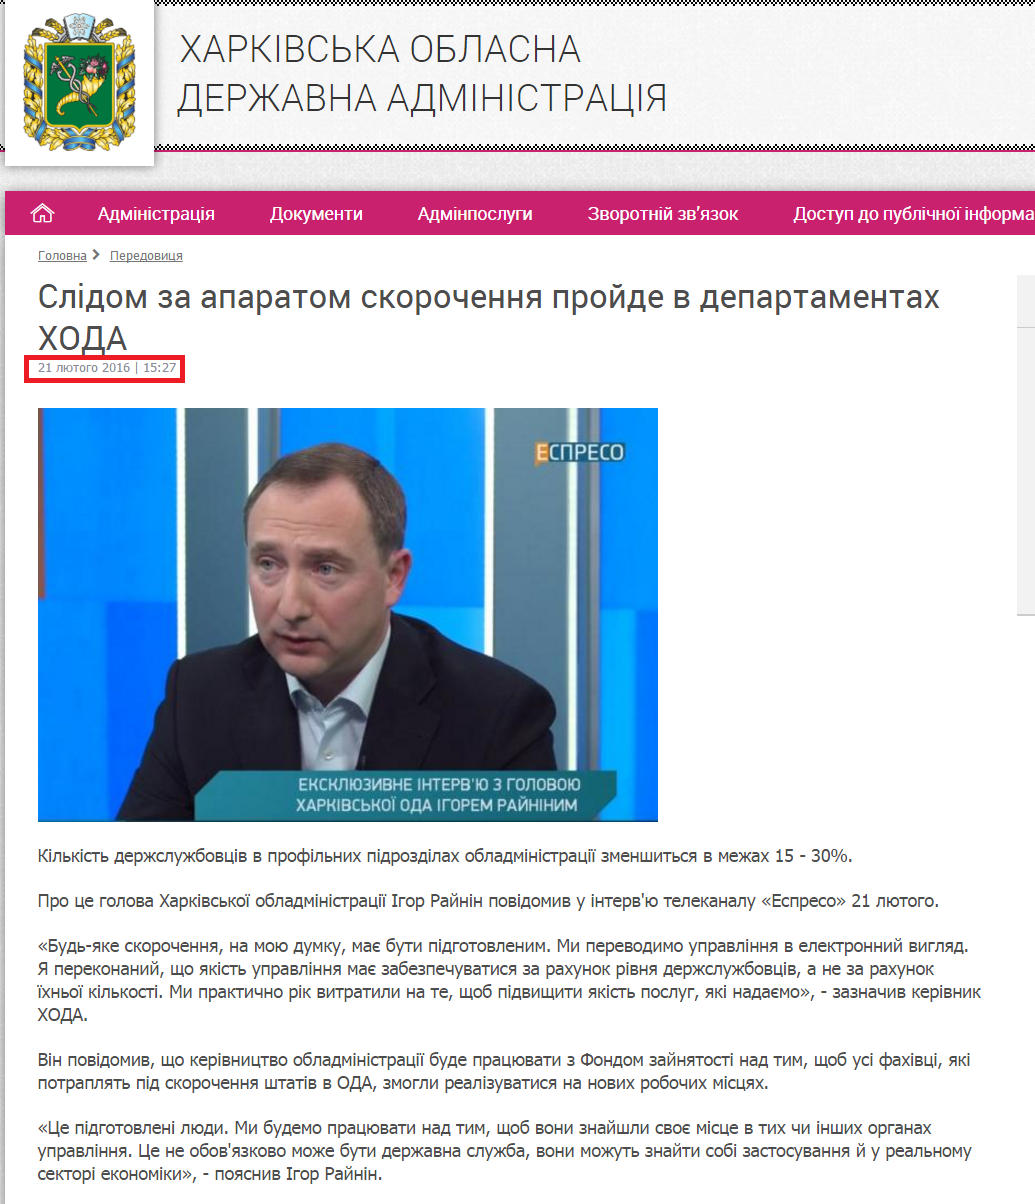 http://kharkivoda.gov.ua/36/79178